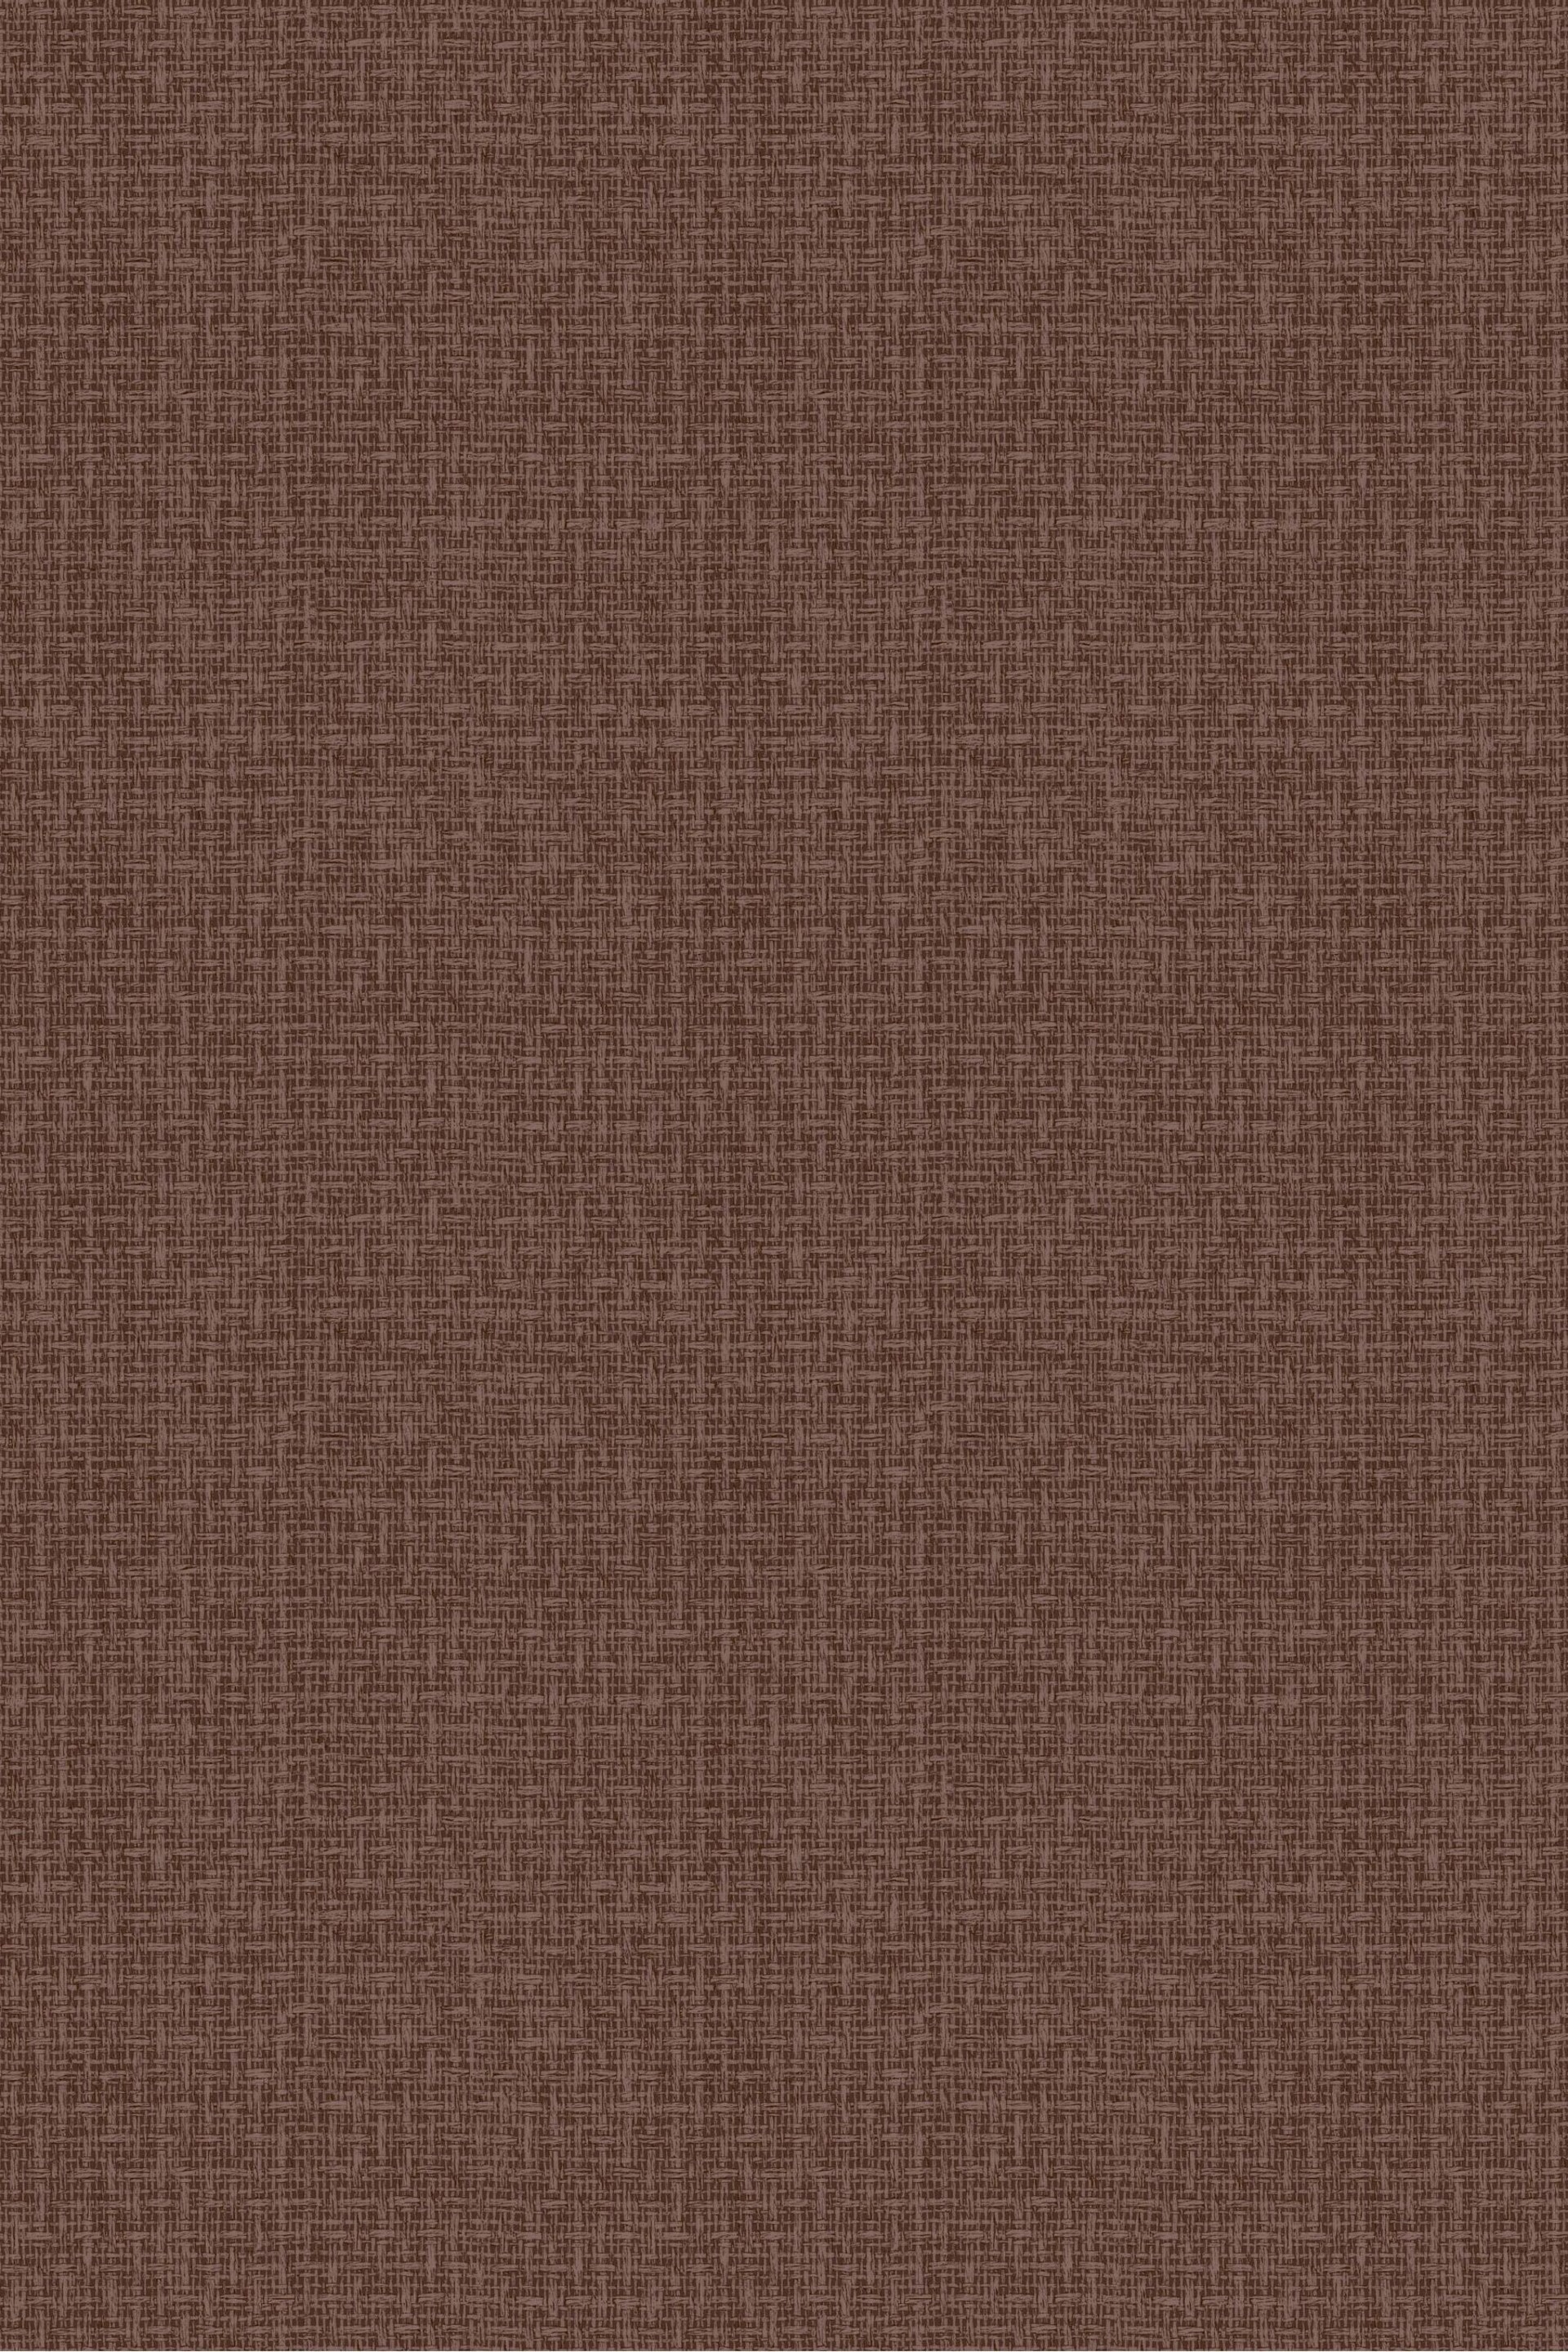 Brown Textured Nomadic Wallpaper - Image 3 of 4